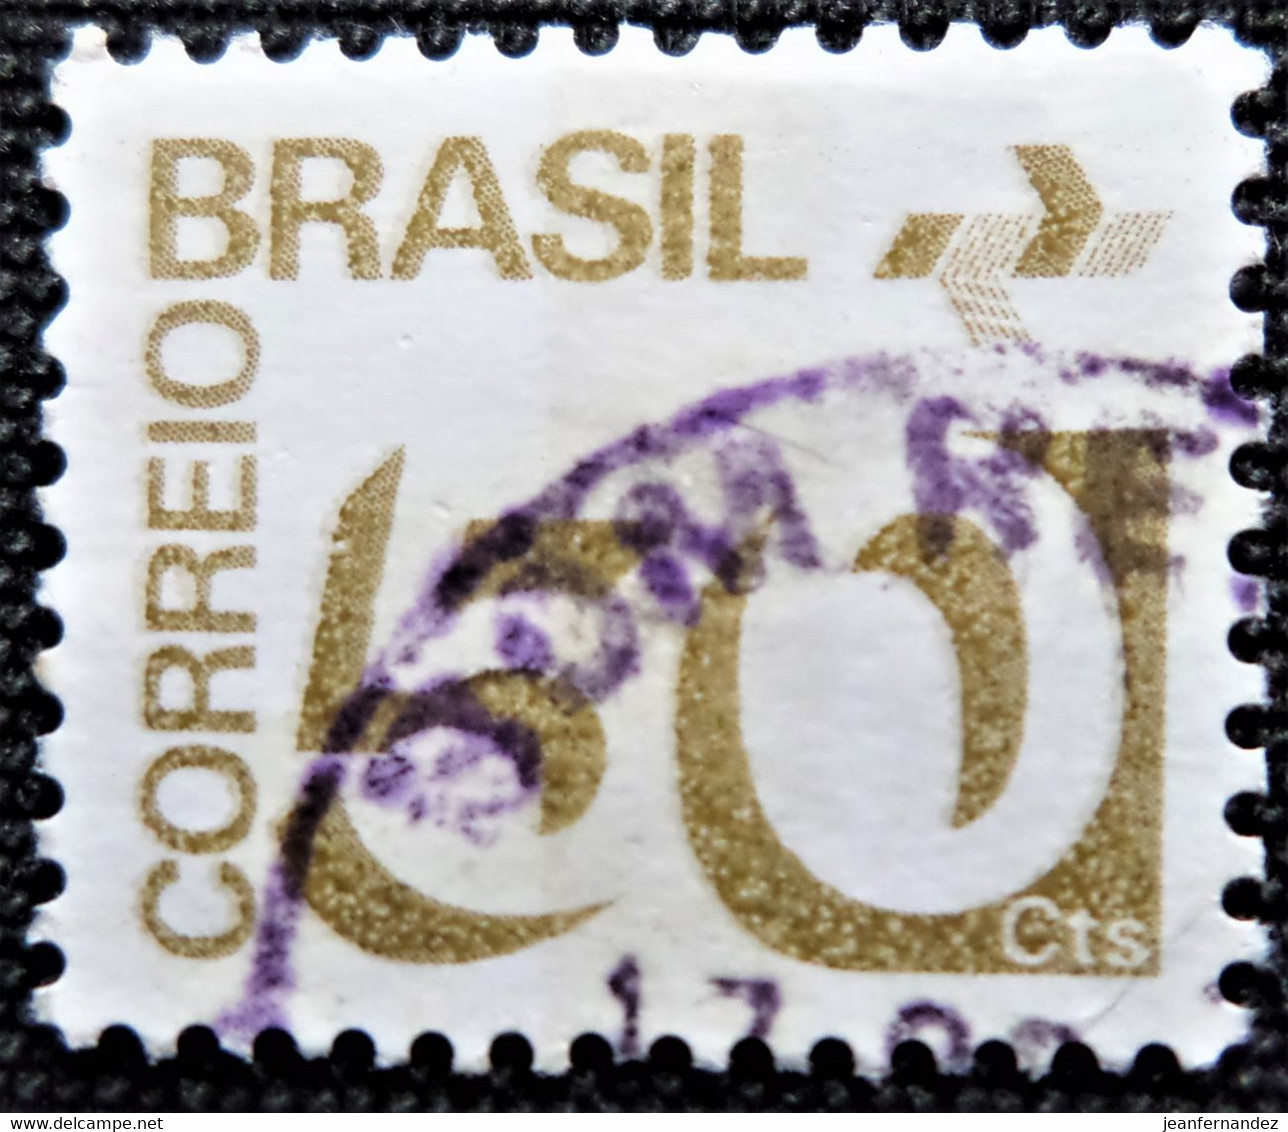 Timbre Du Brésil 1974 Numeral And P.T.T. Symbol  Stampworld N° 1436 - Oblitérés